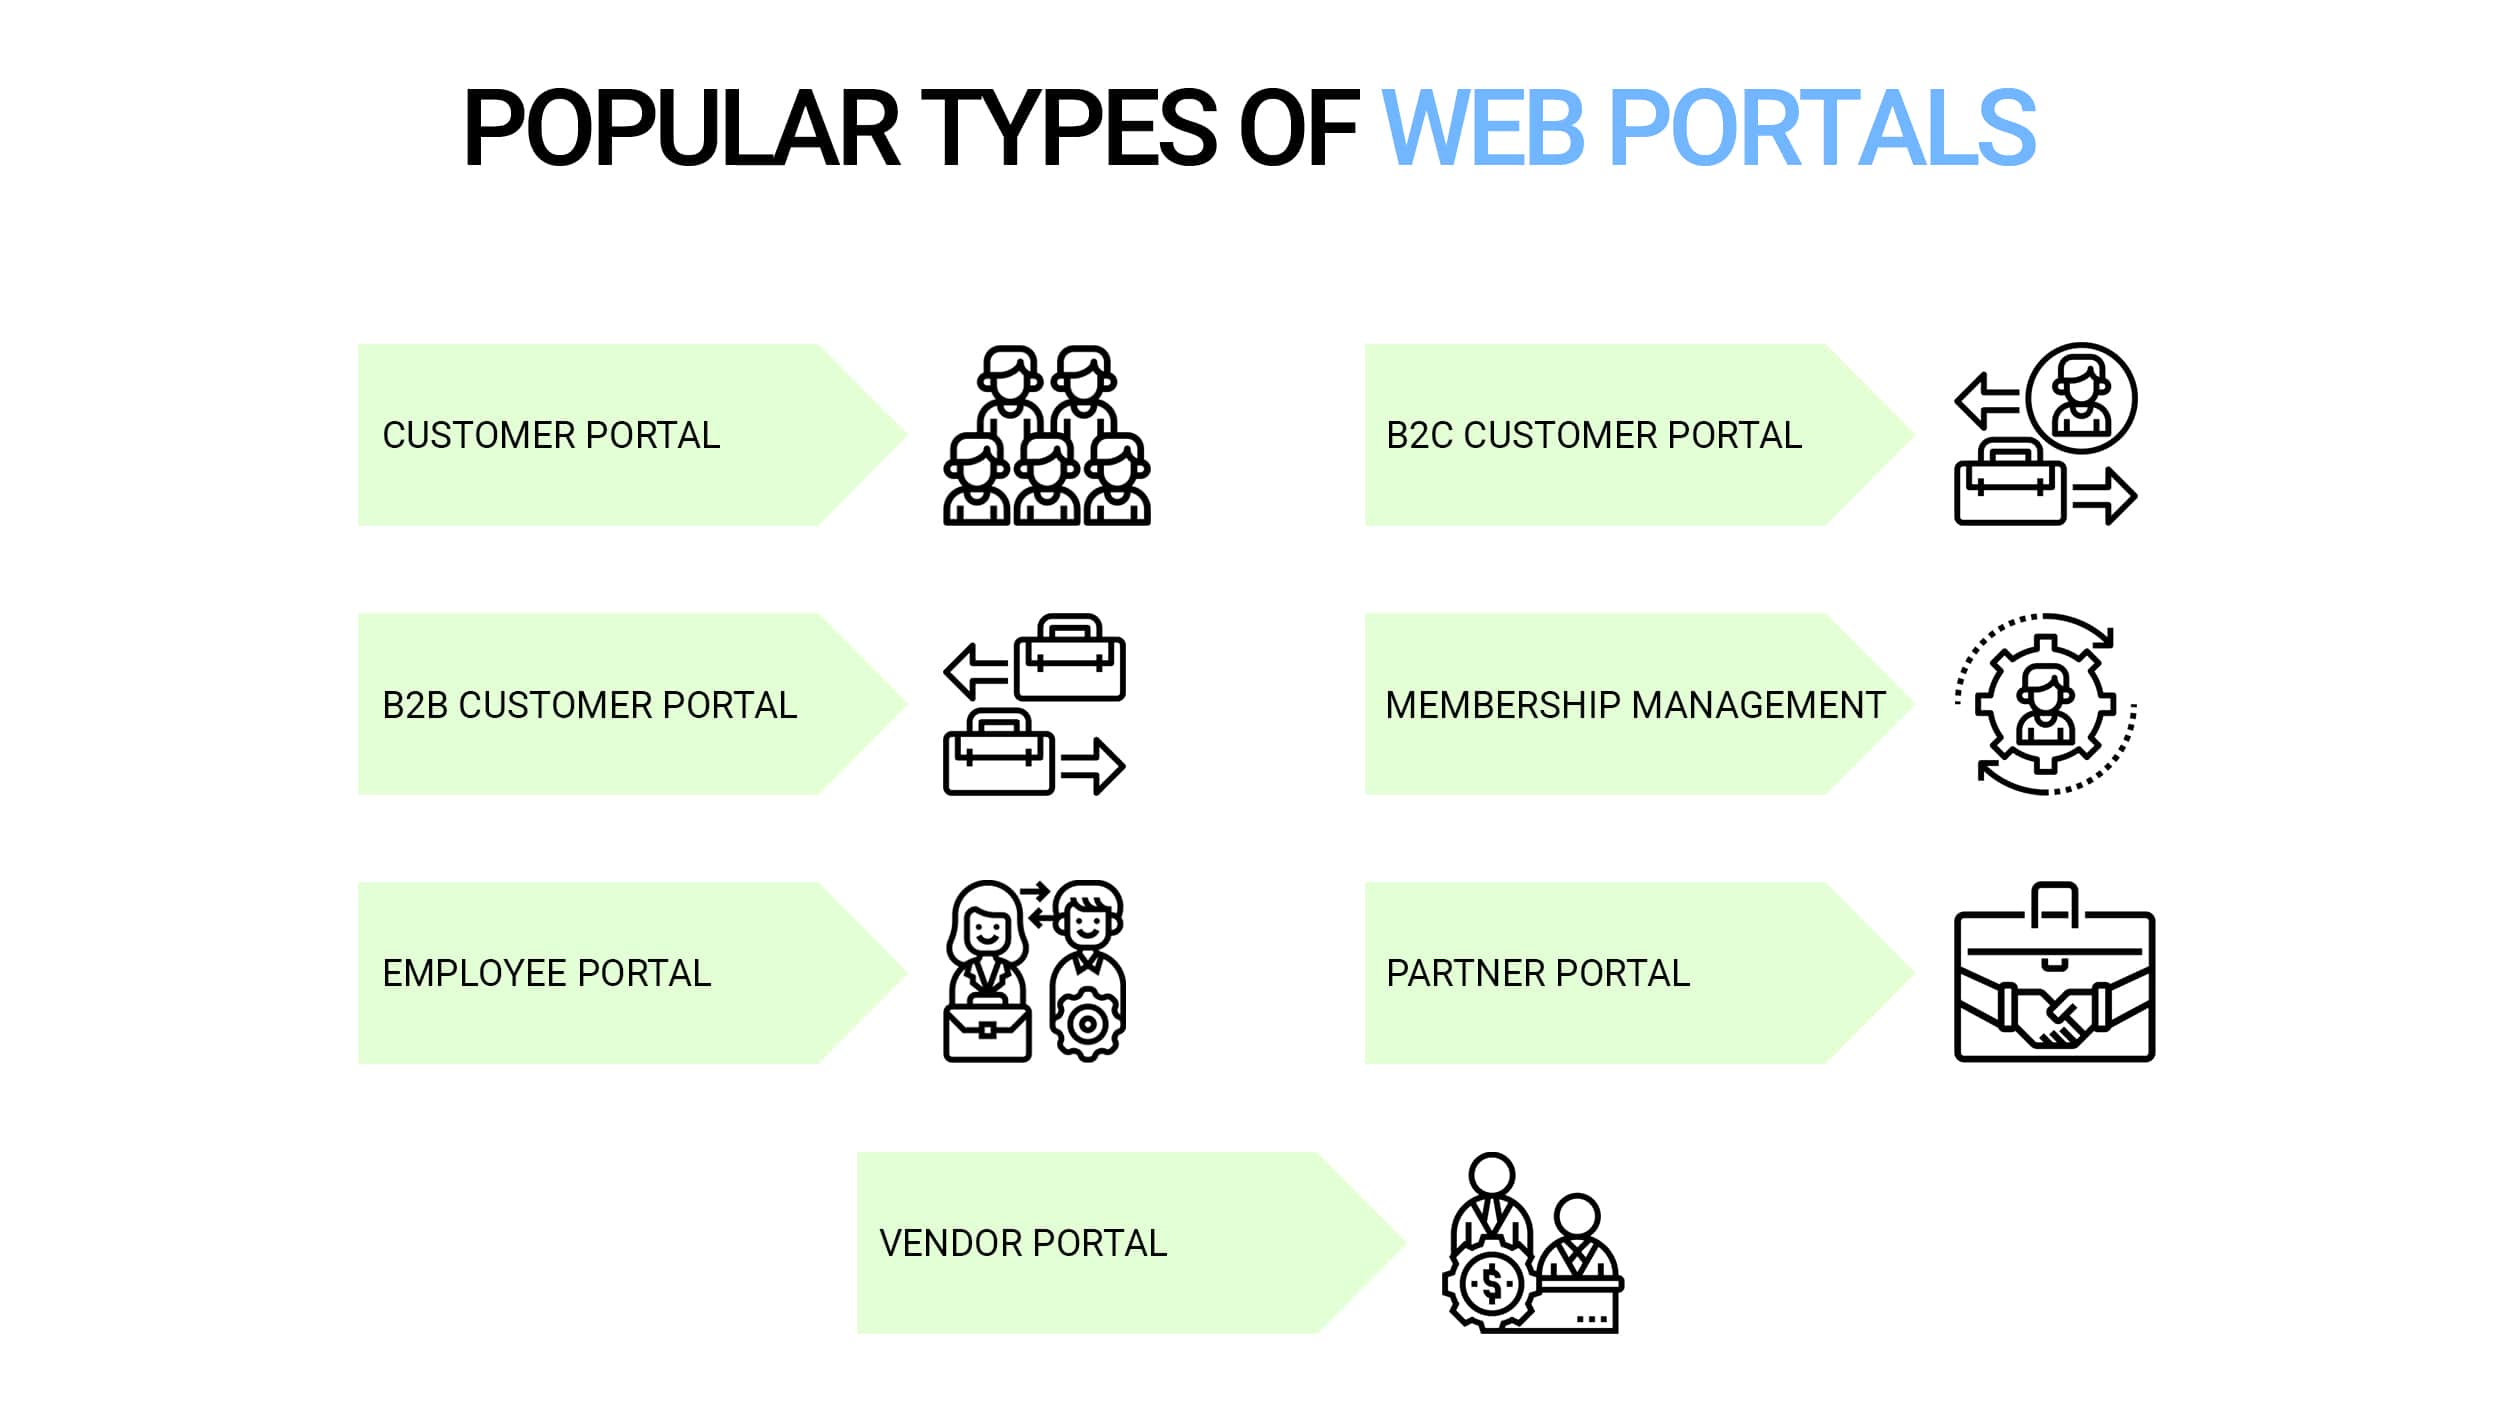 Types of web portals